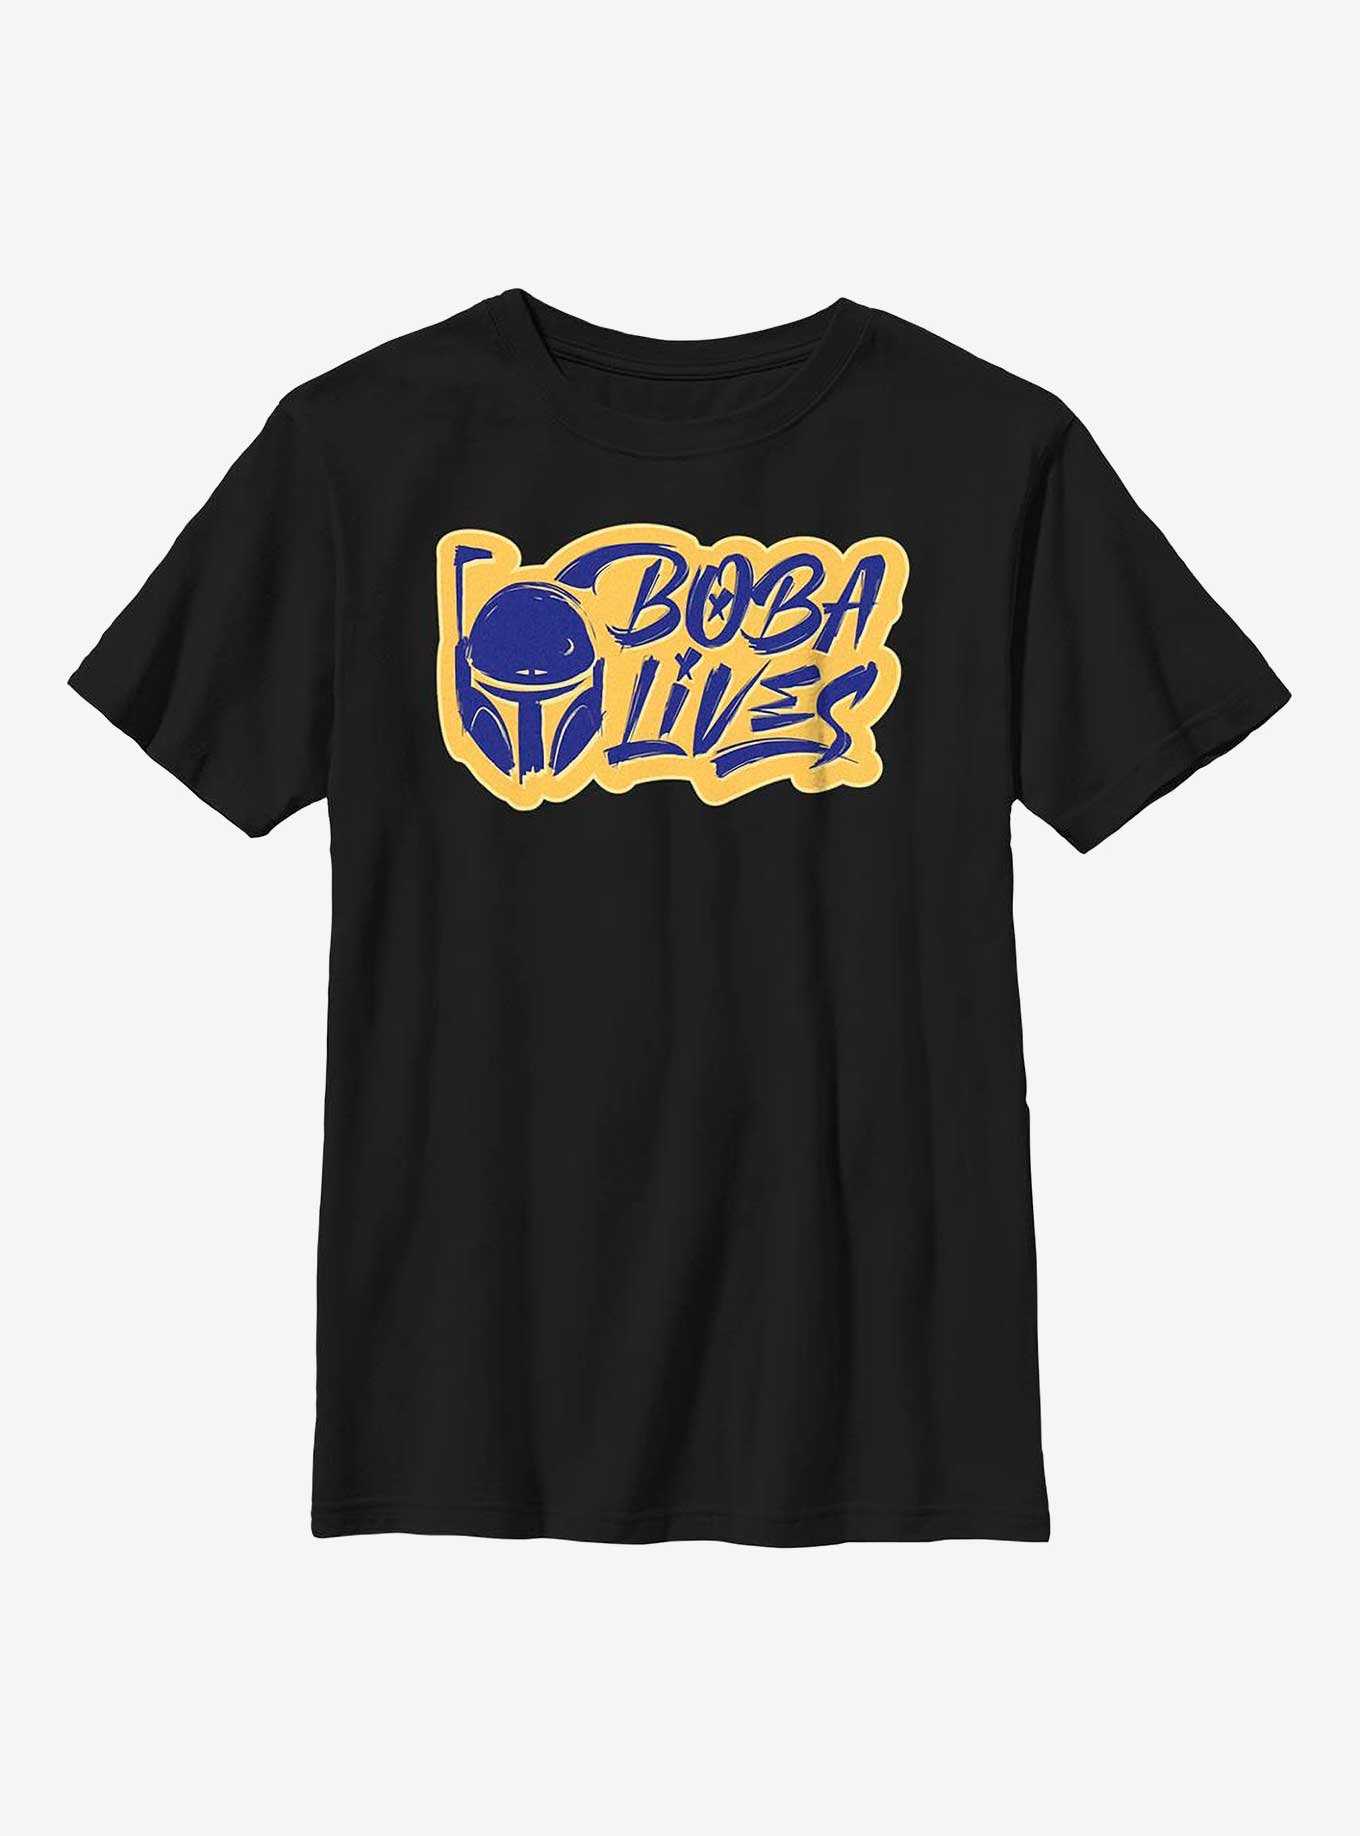 Star Wars: The Book Of Boba Fett Boba Lives Youth T-Shirt, , hi-res